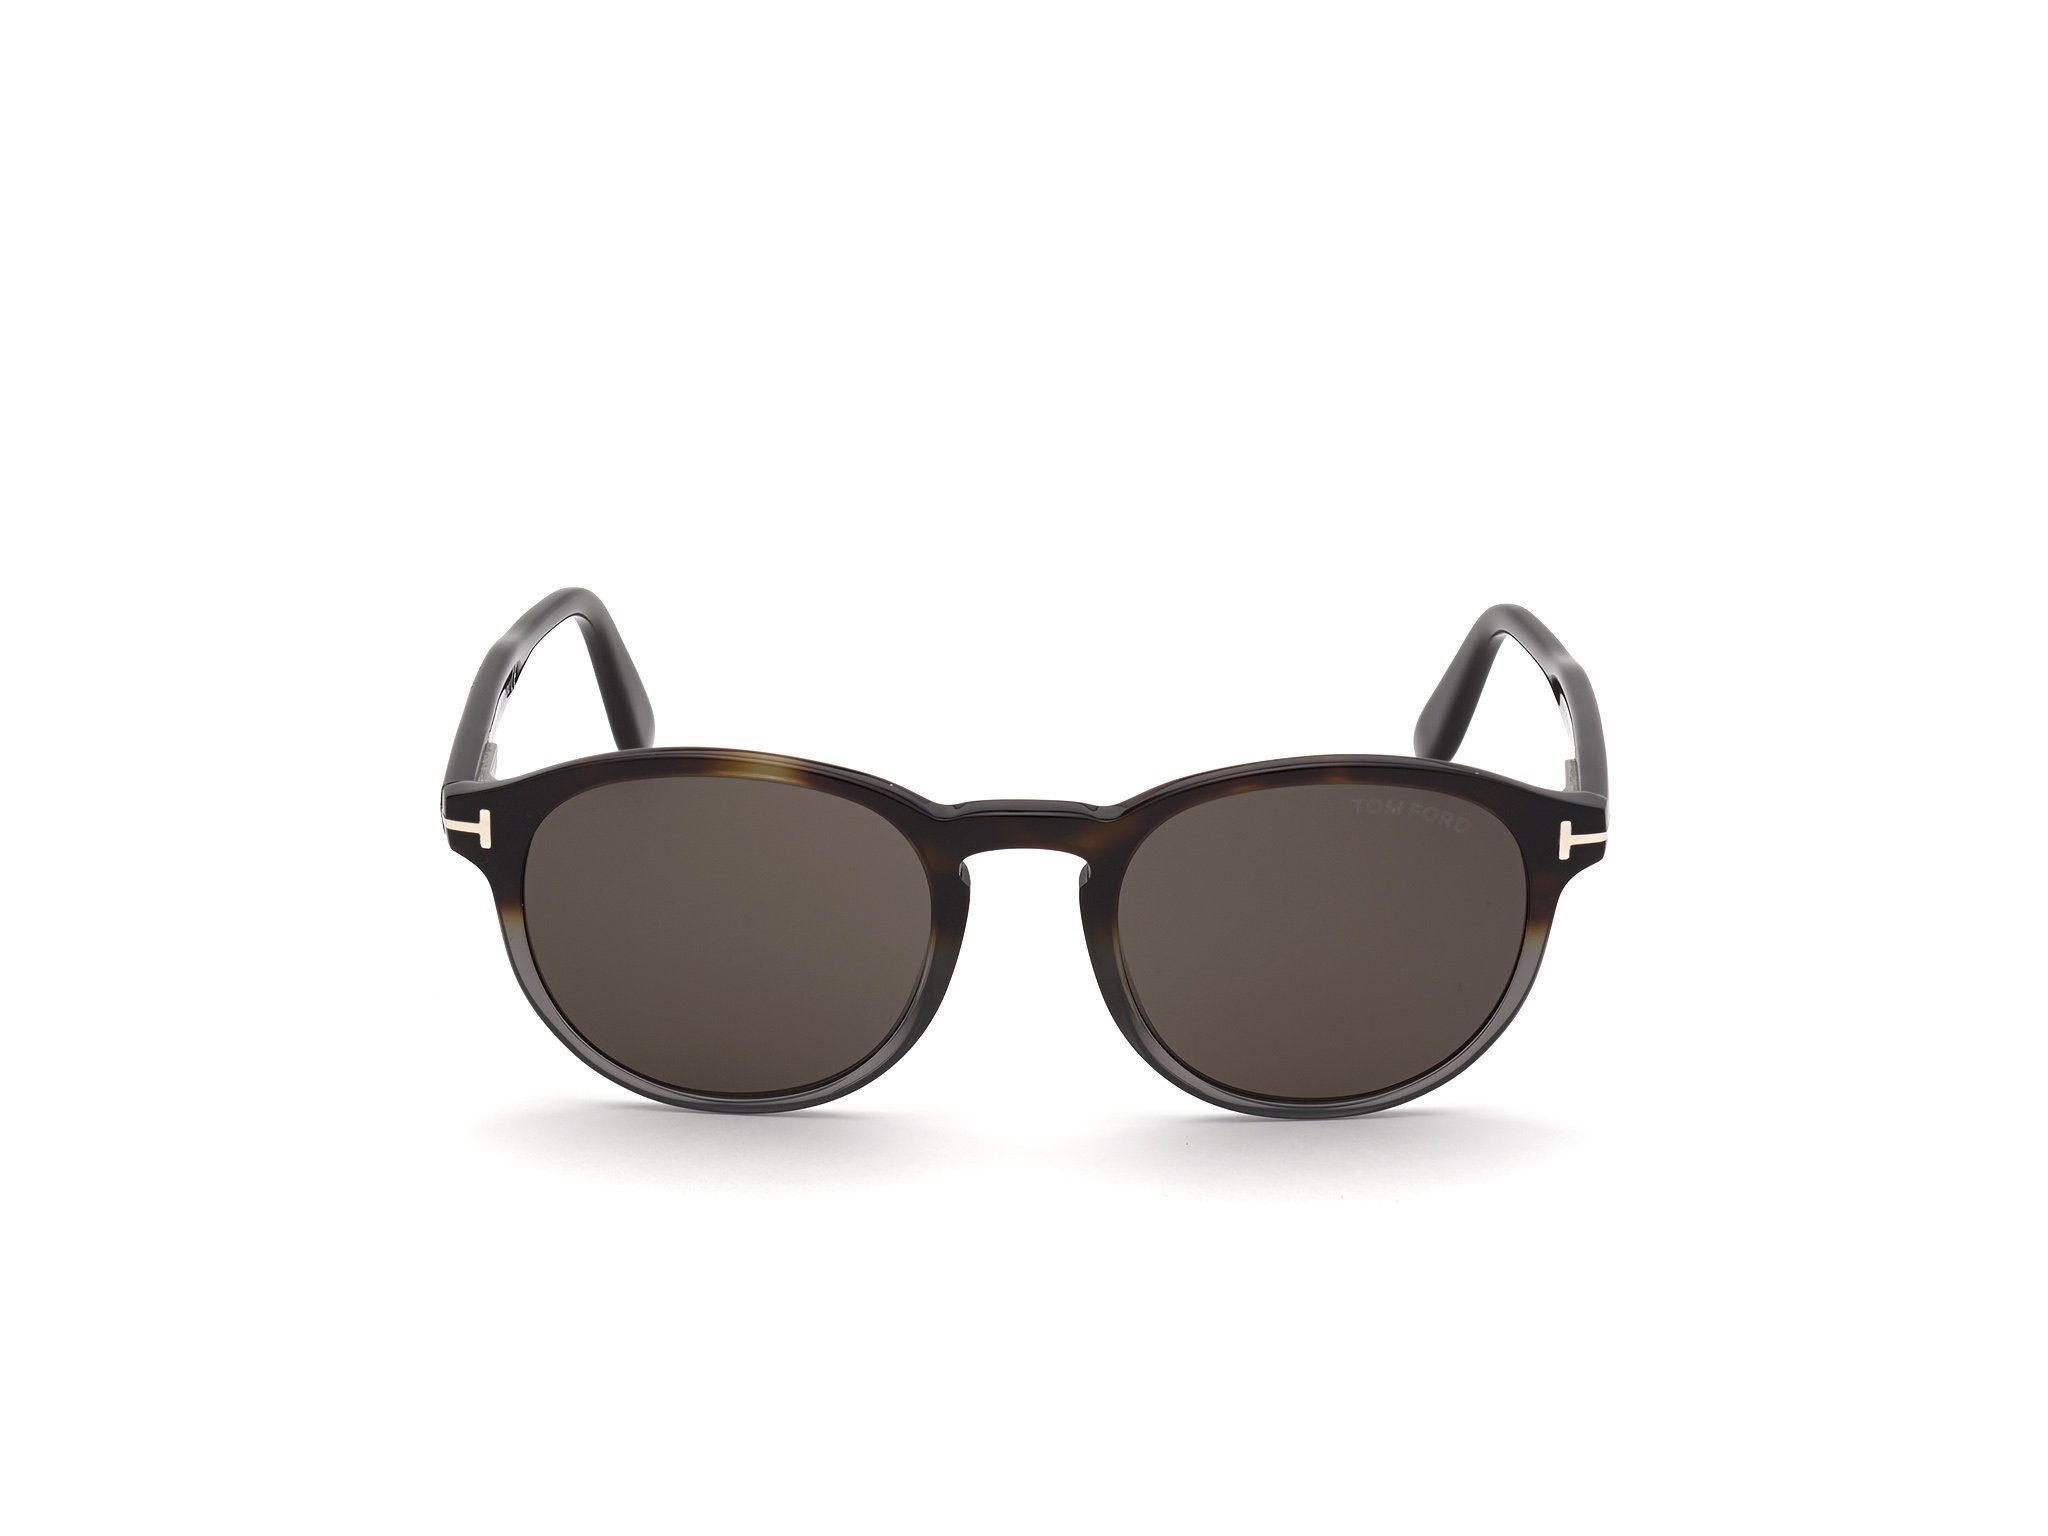 Das Bild zeigt die Sonnenbrille FT0834 der Marke Tom Ford in havanna grau von vorne.